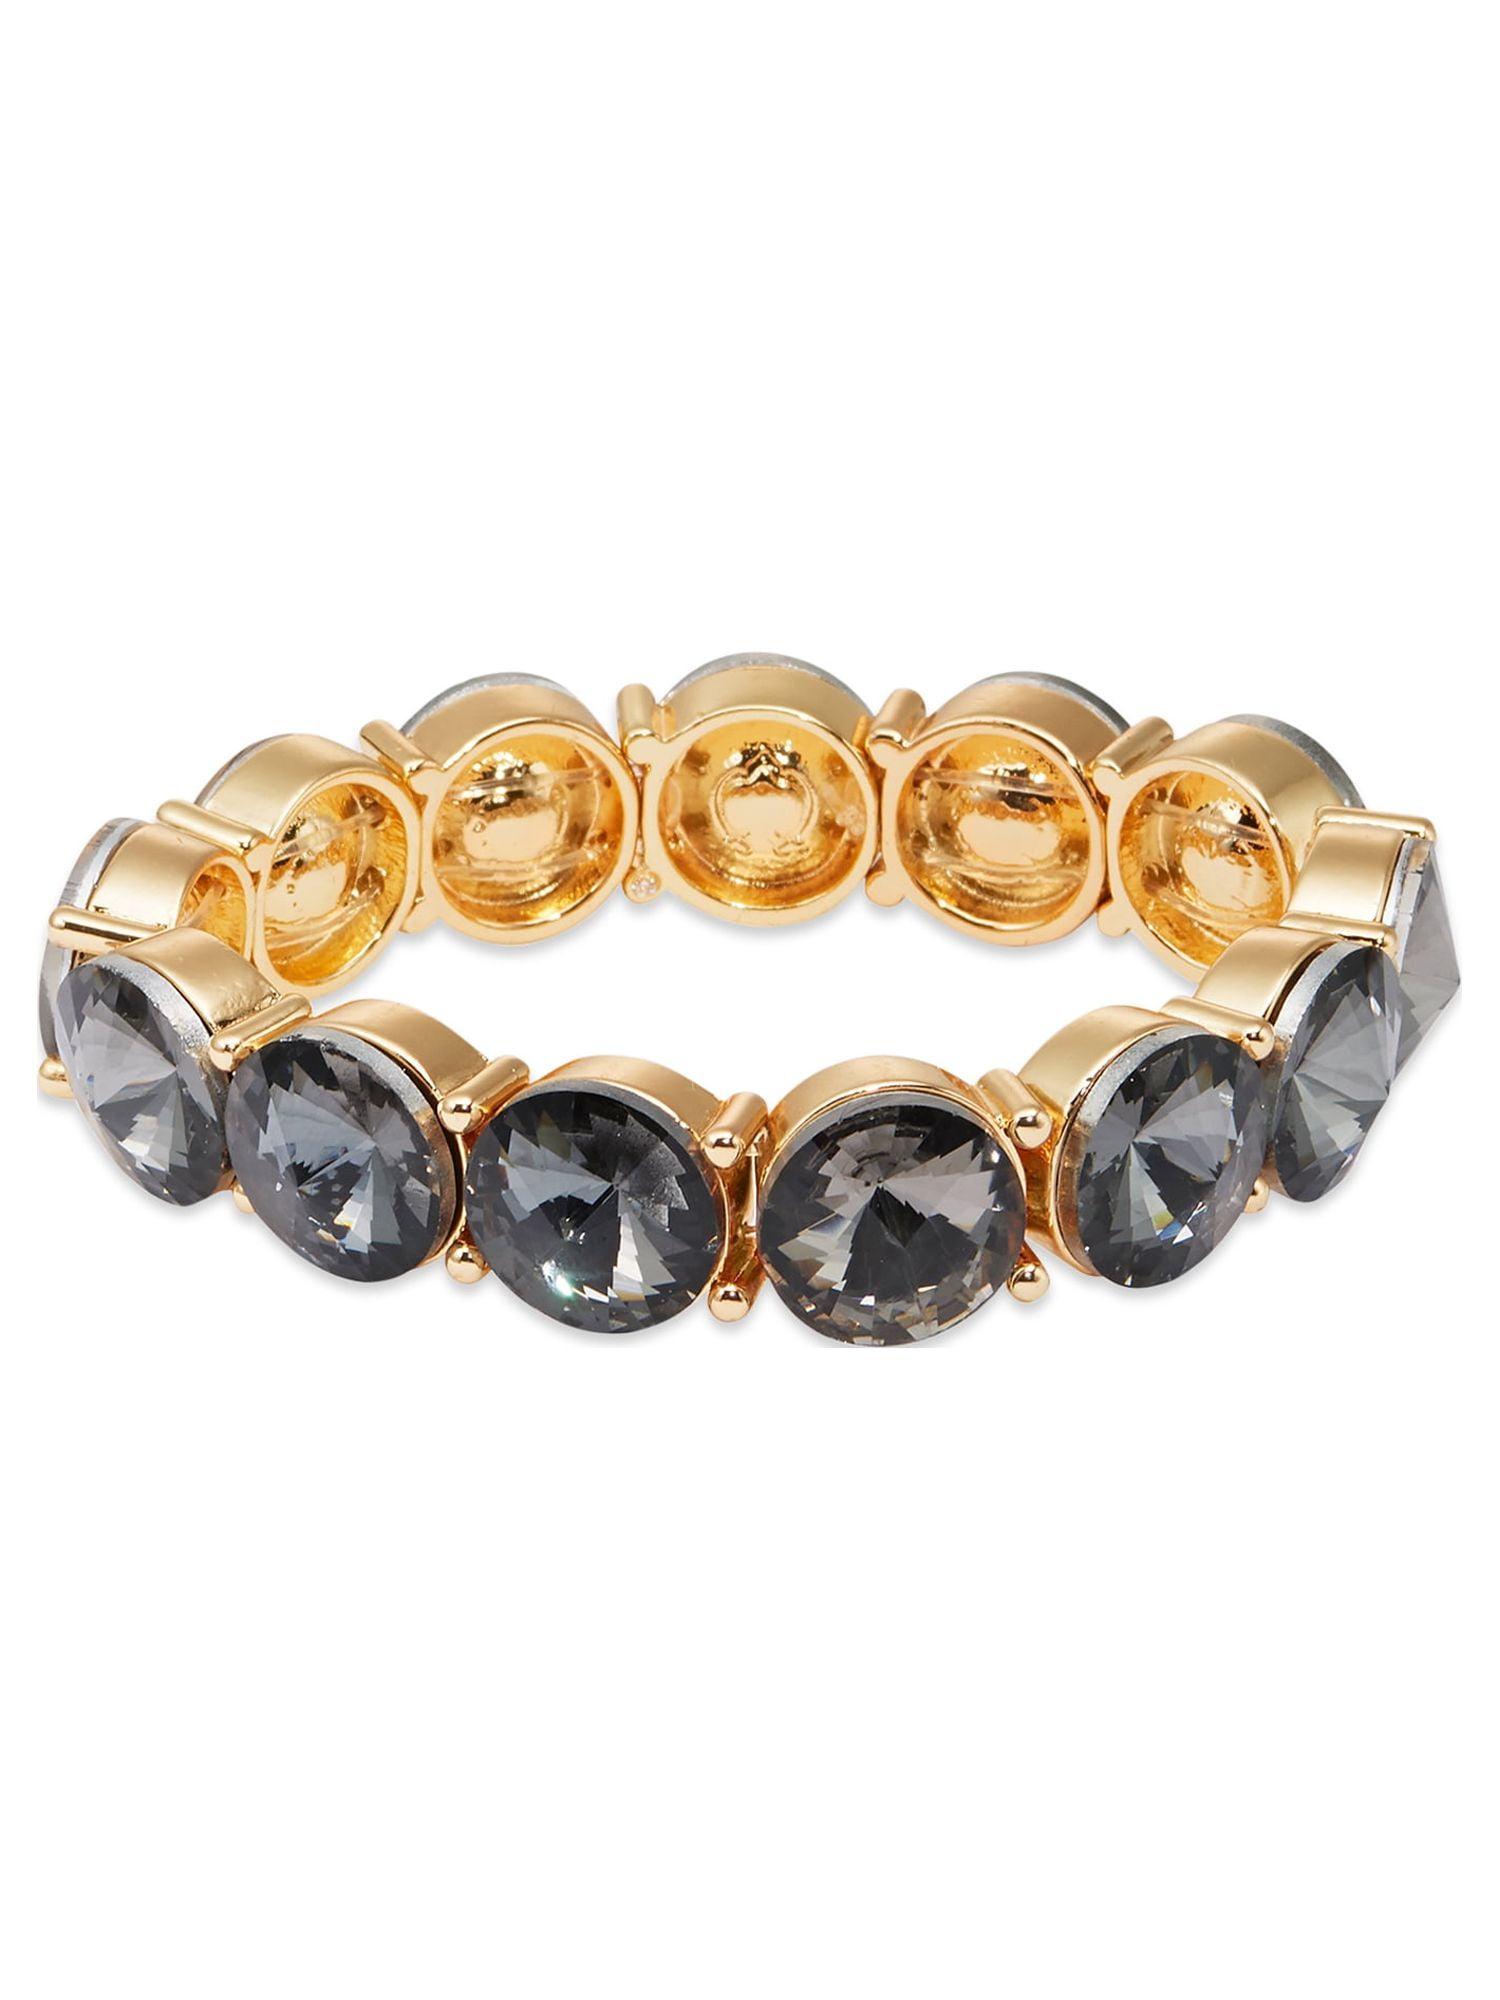 lv bracelet for women gold 10 kt